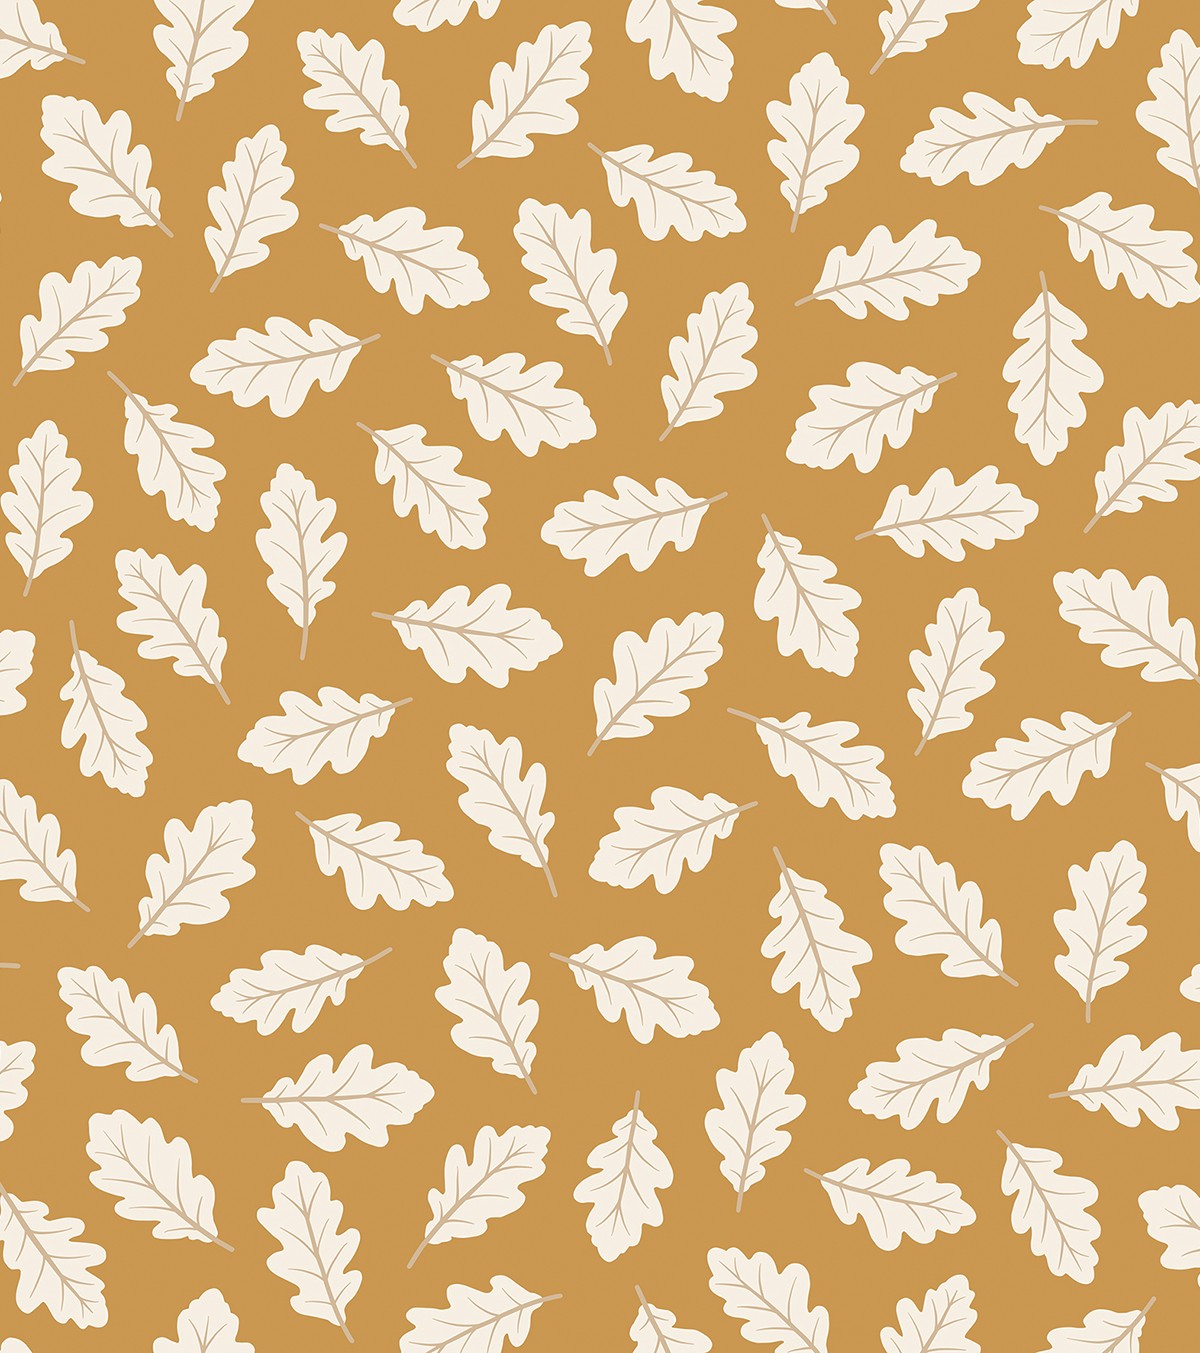 JÖRO - Children's wallpaper - Oak leaf pattern